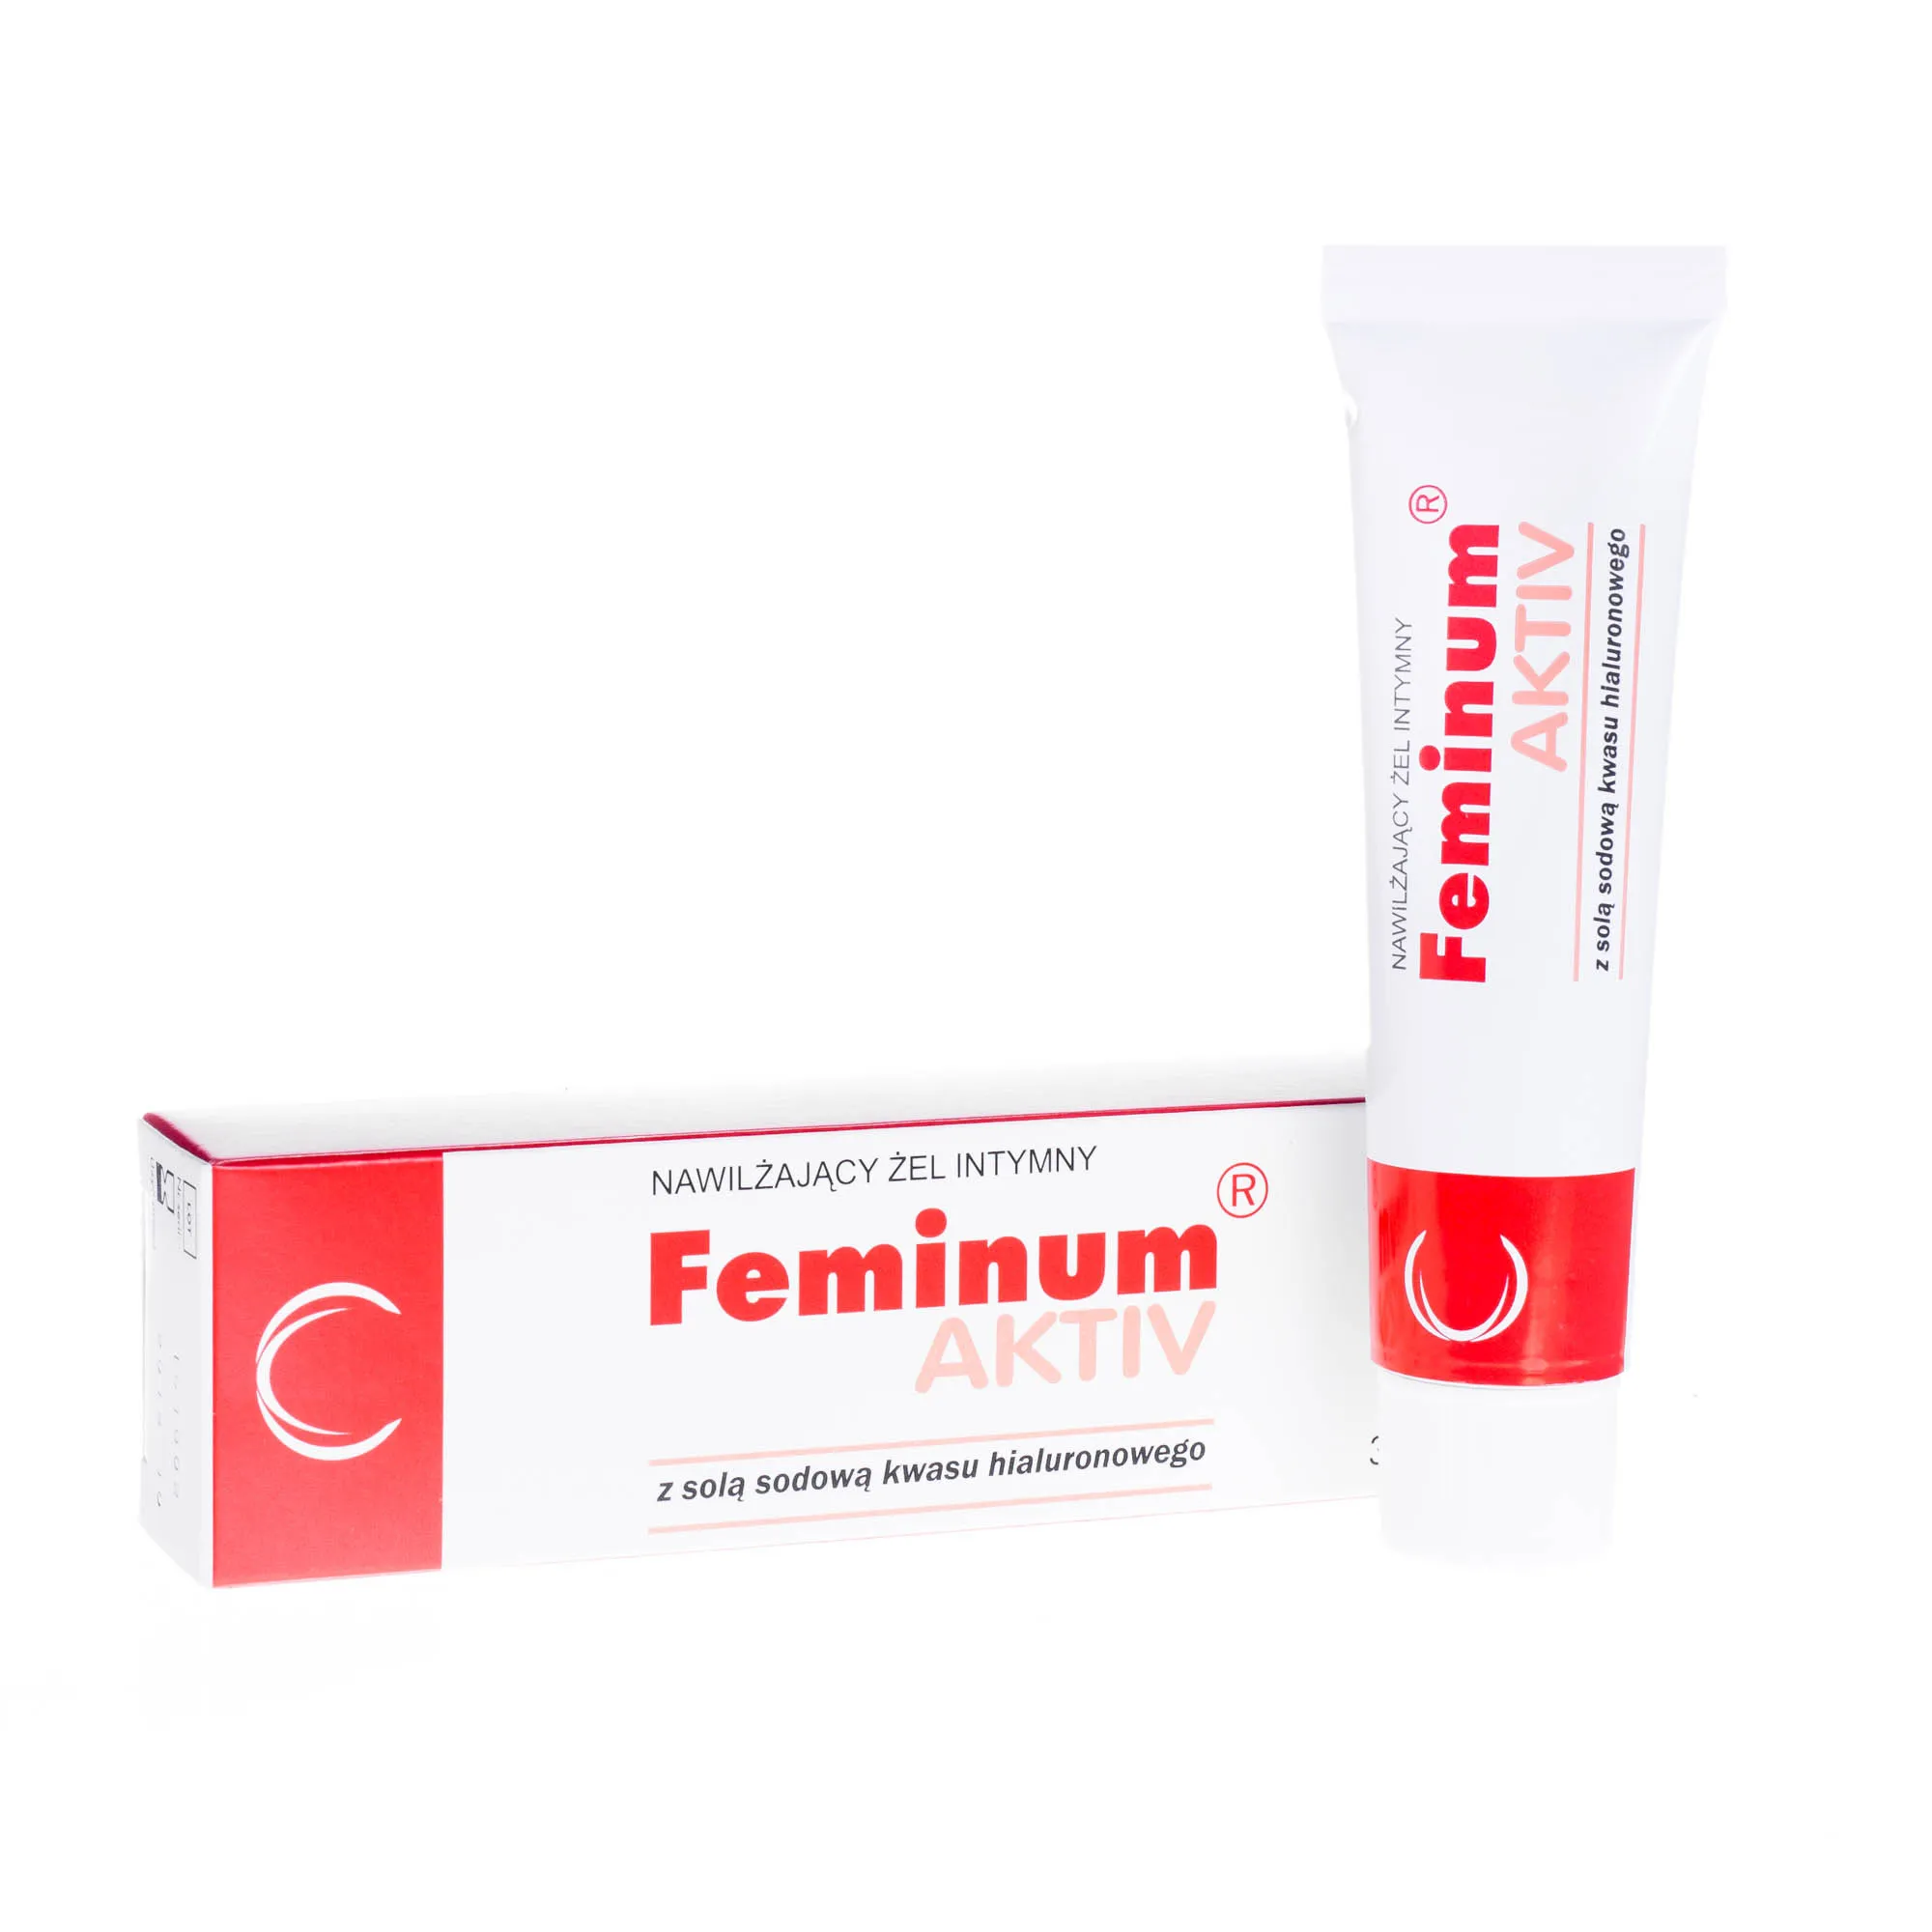 Feminum Aktiv - nawilżający żel intymny, 30 g